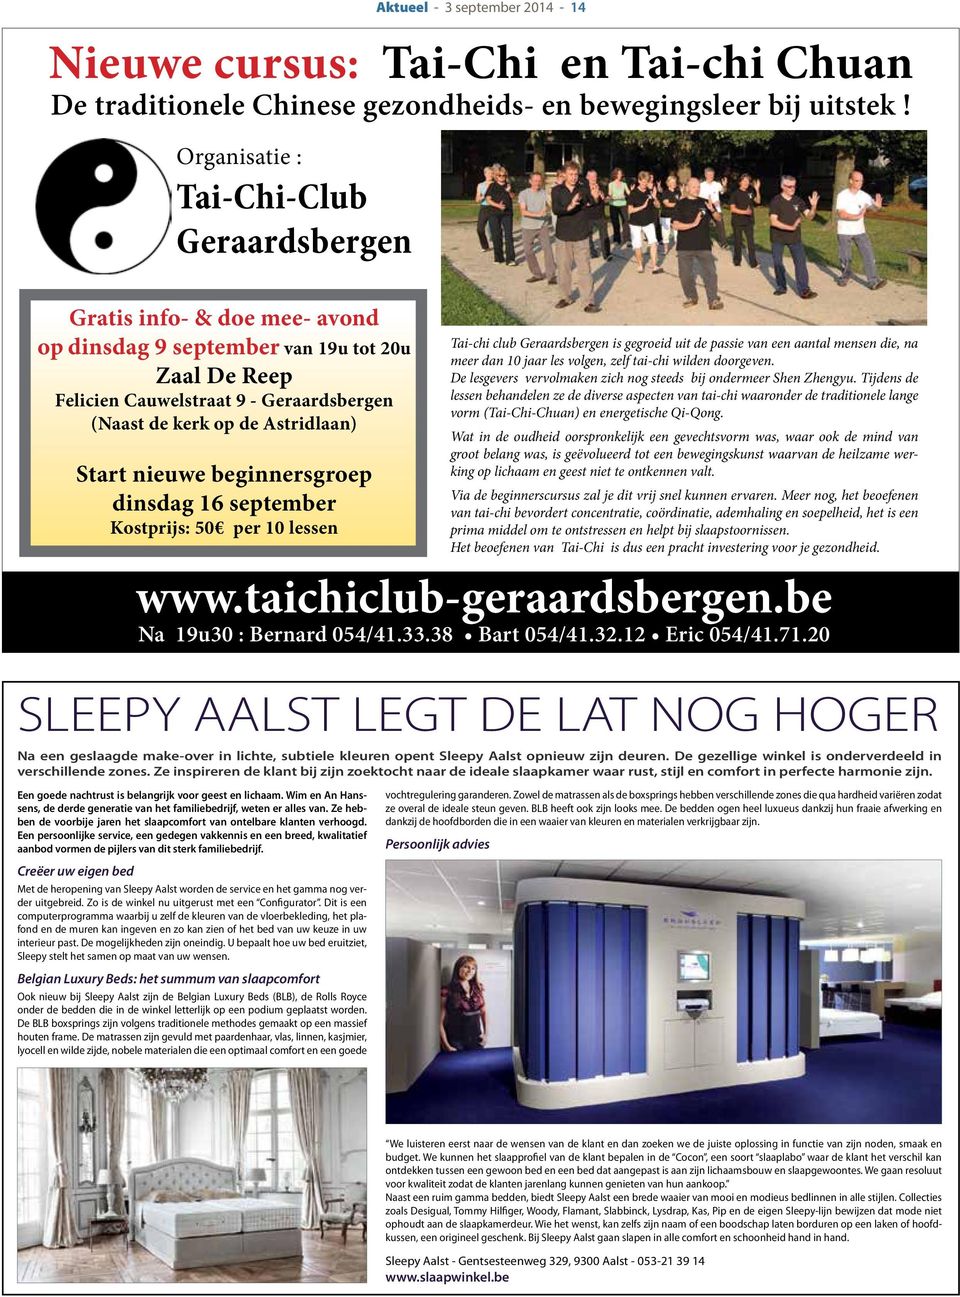 Start nieuwe beginnersgroep dinsdag 16 september Kostprijs: 50 per 10 lessen Tai-chi club Geraardsbergen is gegroeid uit de passie van een aantal mensen die, na meer dan 10 jaar les volgen, zelf